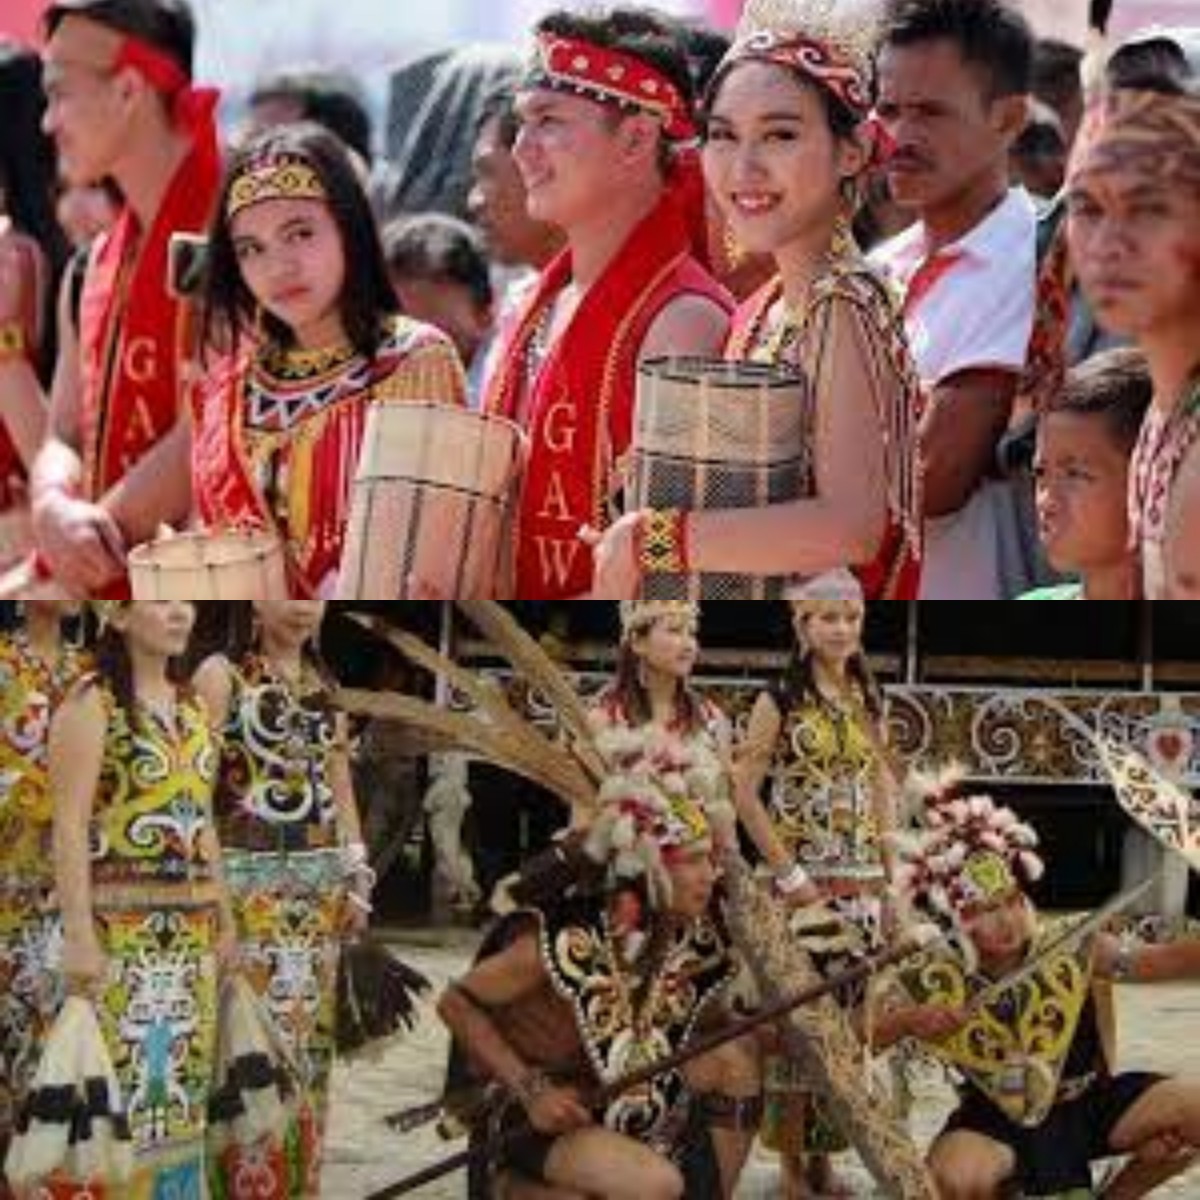 Liburan ke Kalimantan? Yuk Kita Mengenal Tradisi dan Budayanya yang Terkenal Unik 